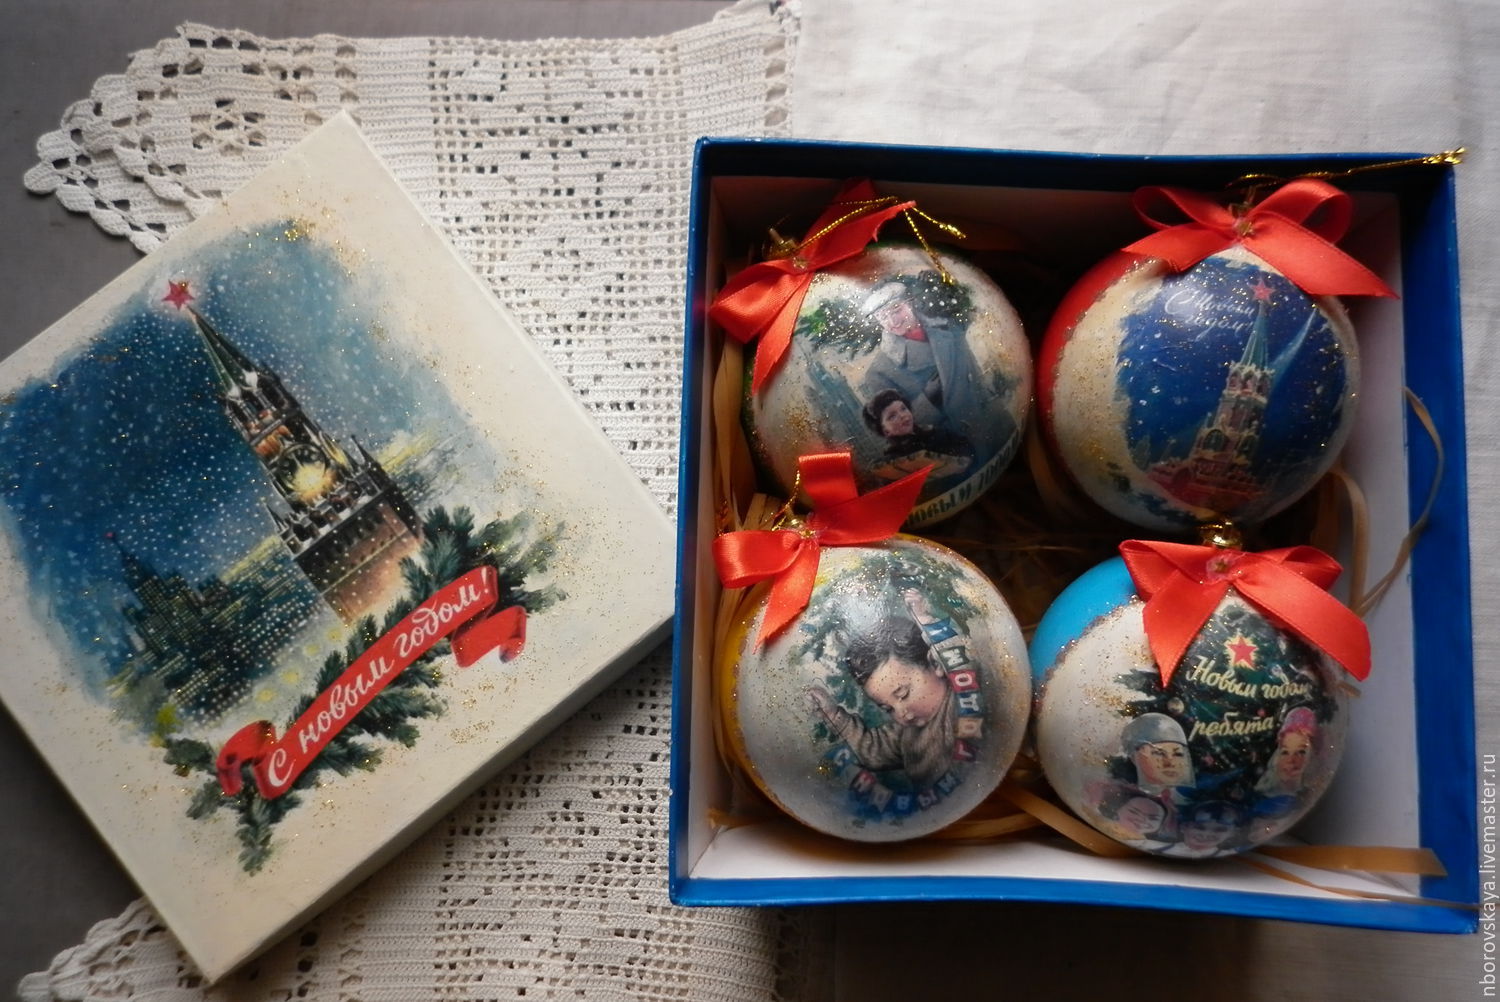 Набор новогодних шаров в коробке Воспоминания о советской эпохе синие